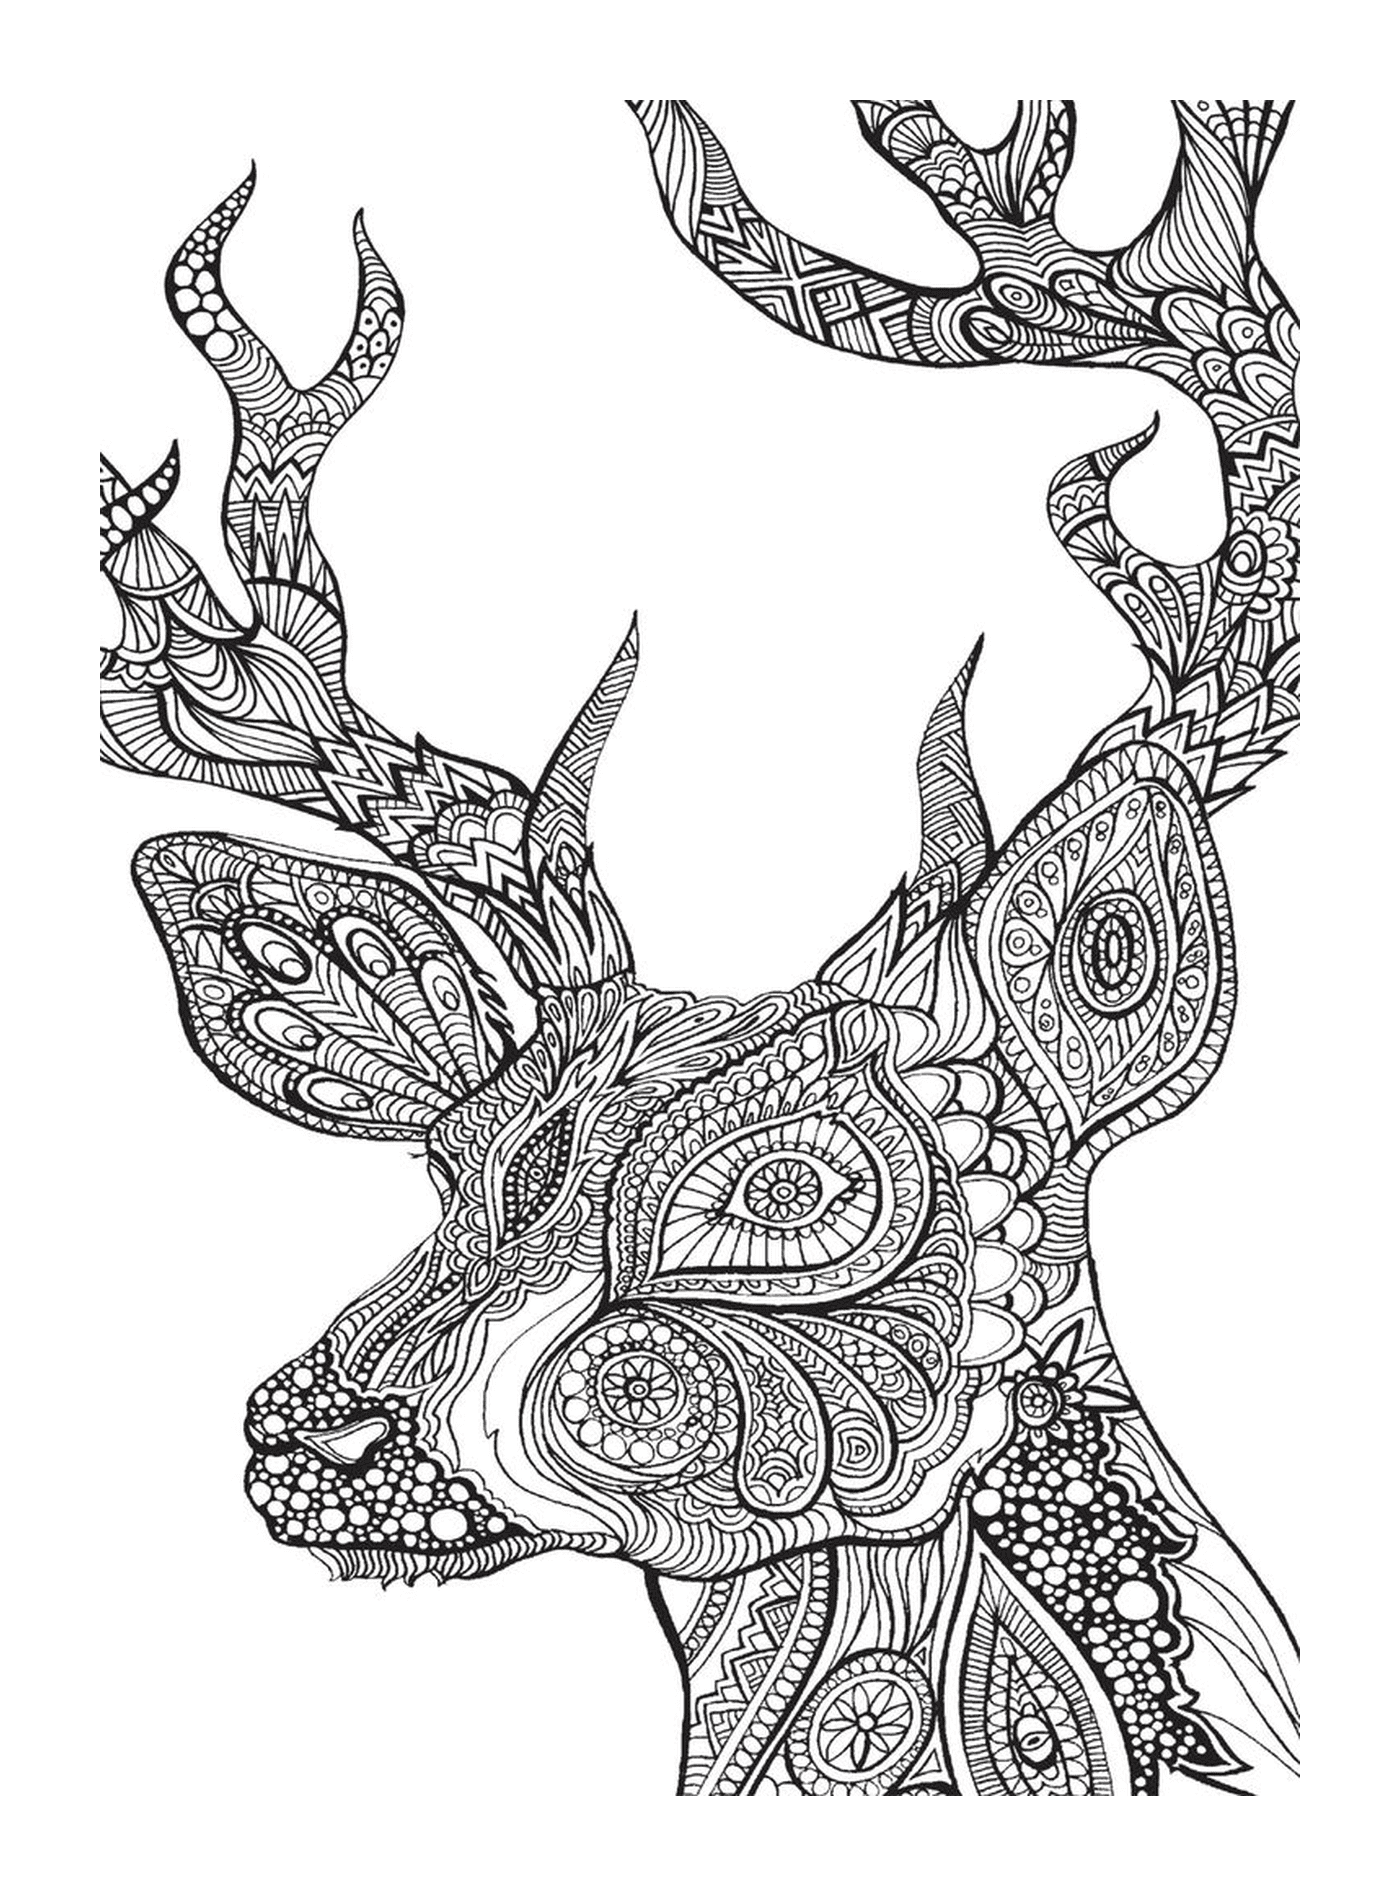  Deer head in drawing 